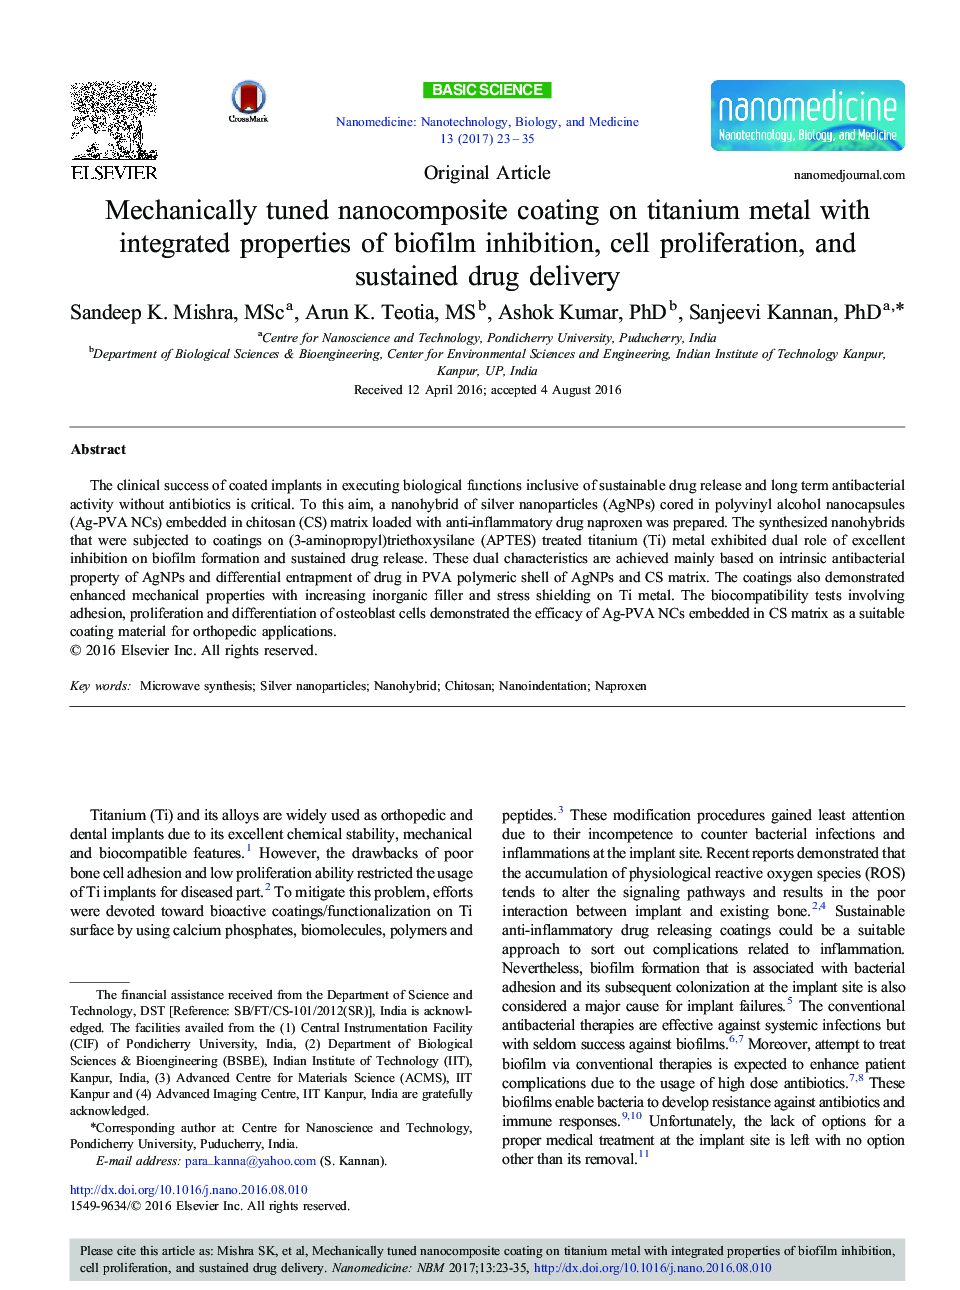 مقاله اصلی با استفاده از پوشش نانوکامپوزیتی روی فلز تیتانیوم با خواص یکپارچه مهار بیوفیلم، تکثیر سلولی و تحویل مداوم دارو 